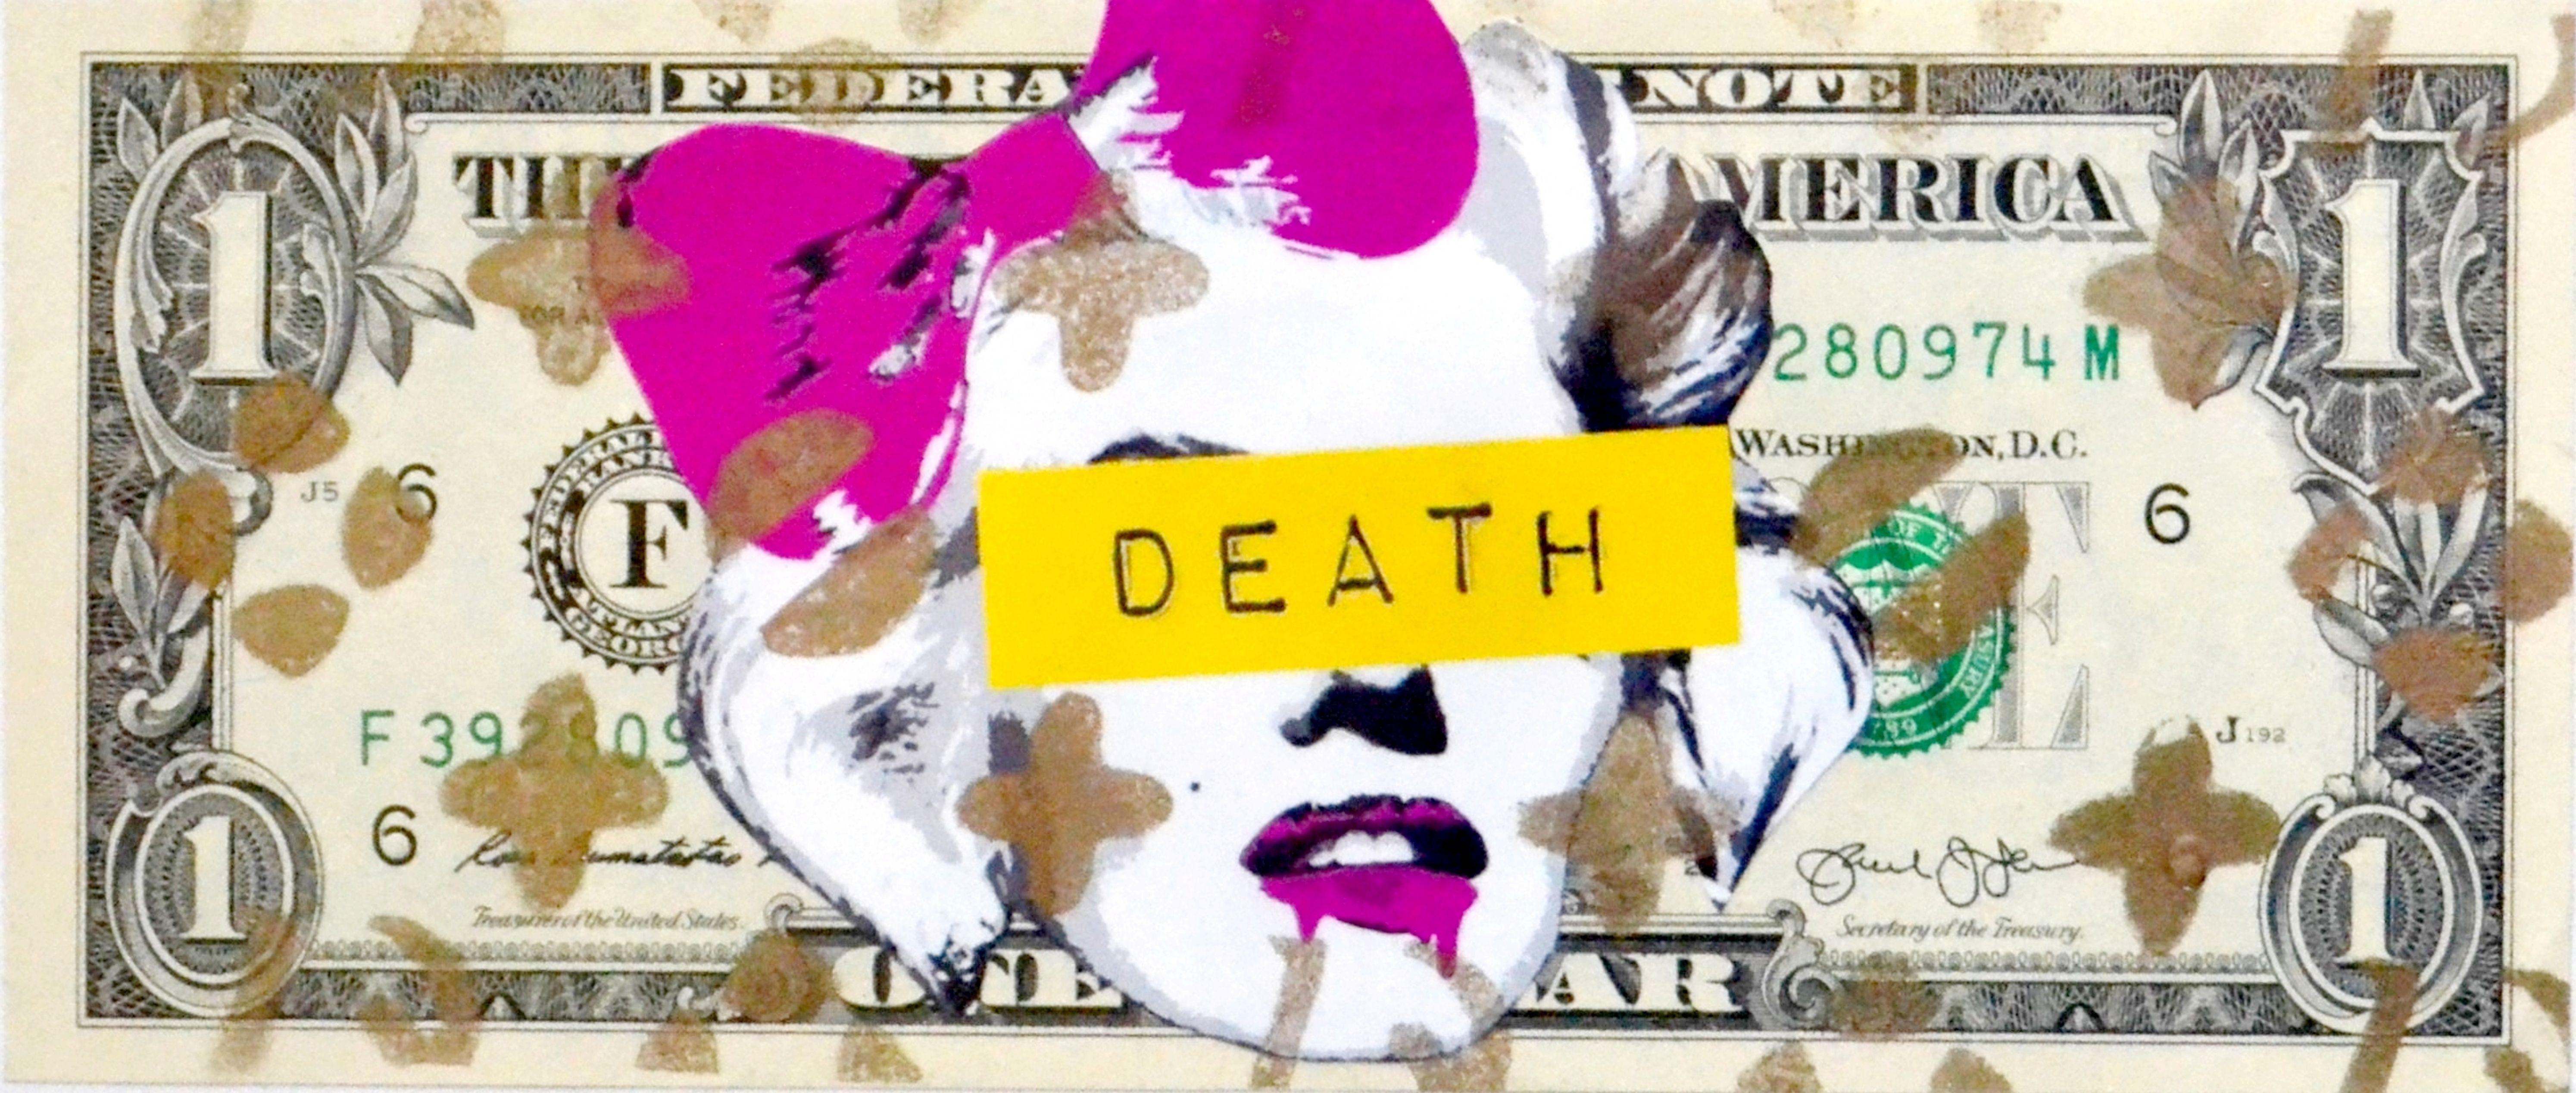 Drip Melt Logo - Marilyn Death Drip Melt (1 $ Bank note) by Death NYC, 2013. Print